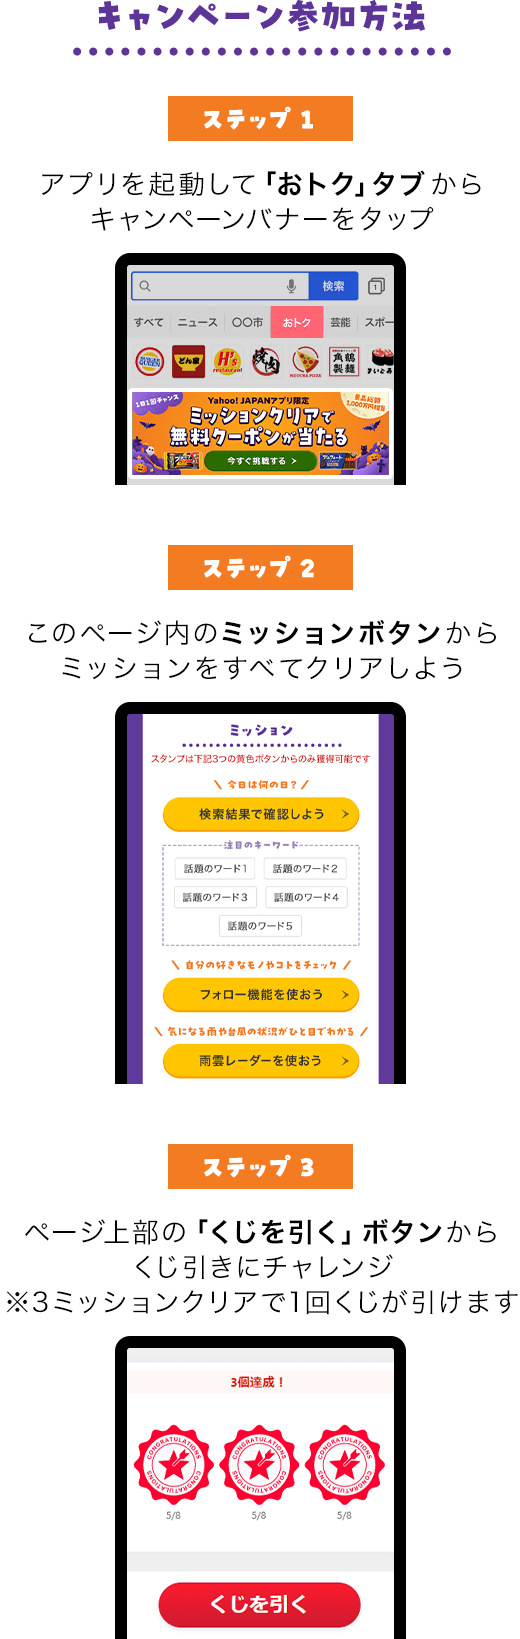 キャンペーン参加方法。参加方法は全部で3ステップ。ステップ1、Yahoo! JAPANアプリをダウンロードする。ステップ2、ヤフーアプリを起動しておトクタブからキャンペーンバナーをタップする。ステップ3、キャンペーンページからミッションにチャレンジする。